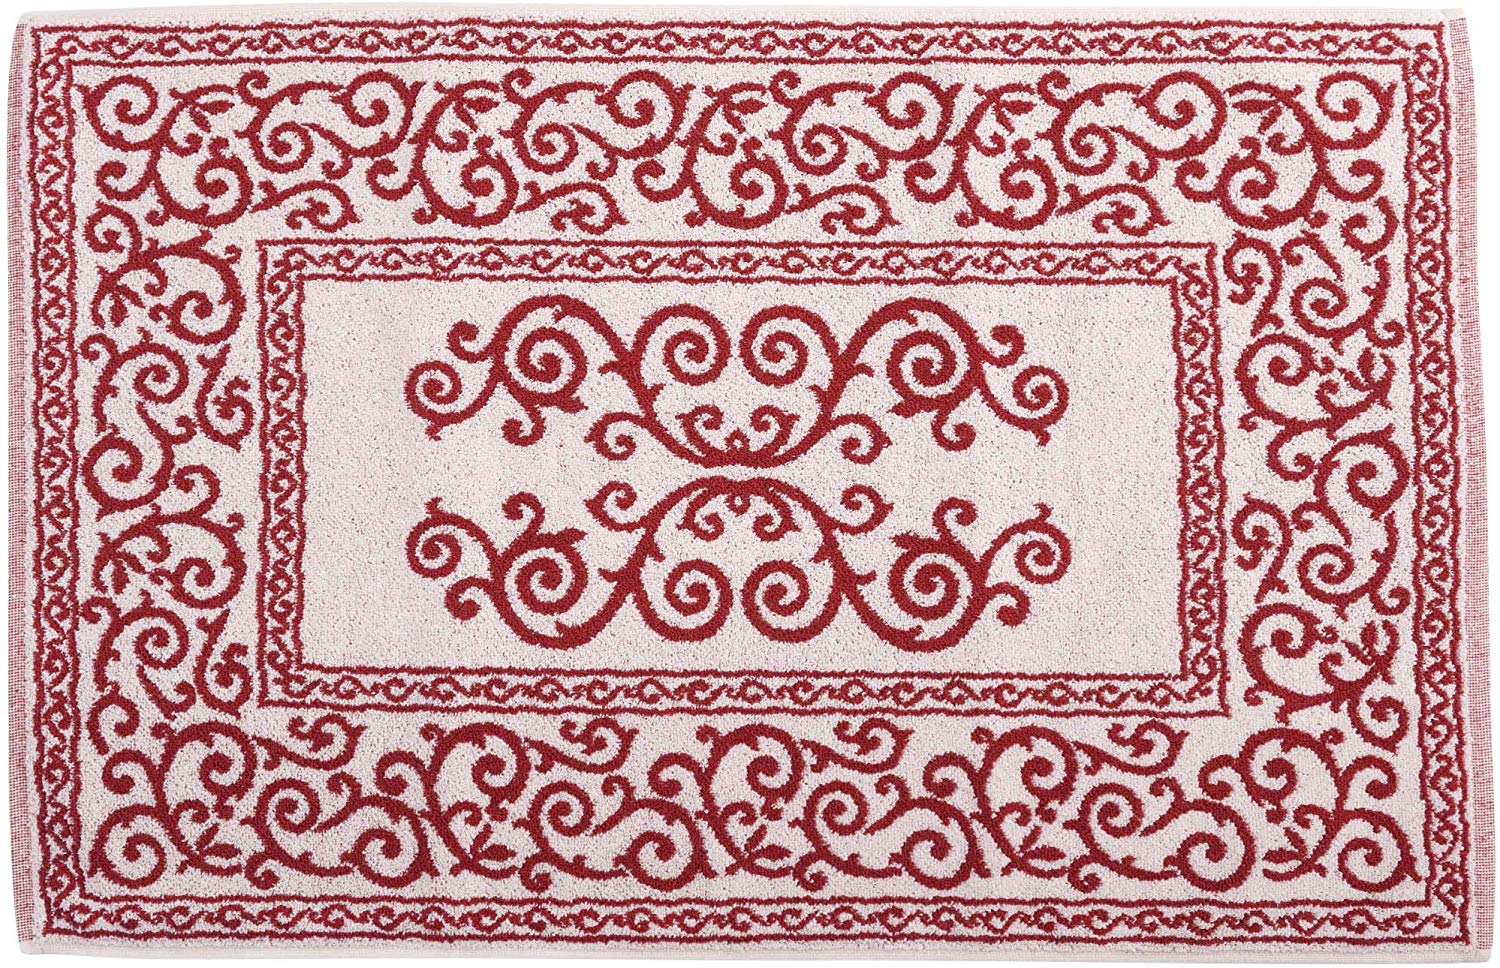 Tappeto Bagno in Cotone con Elegante Decorazione Floreale Colorata